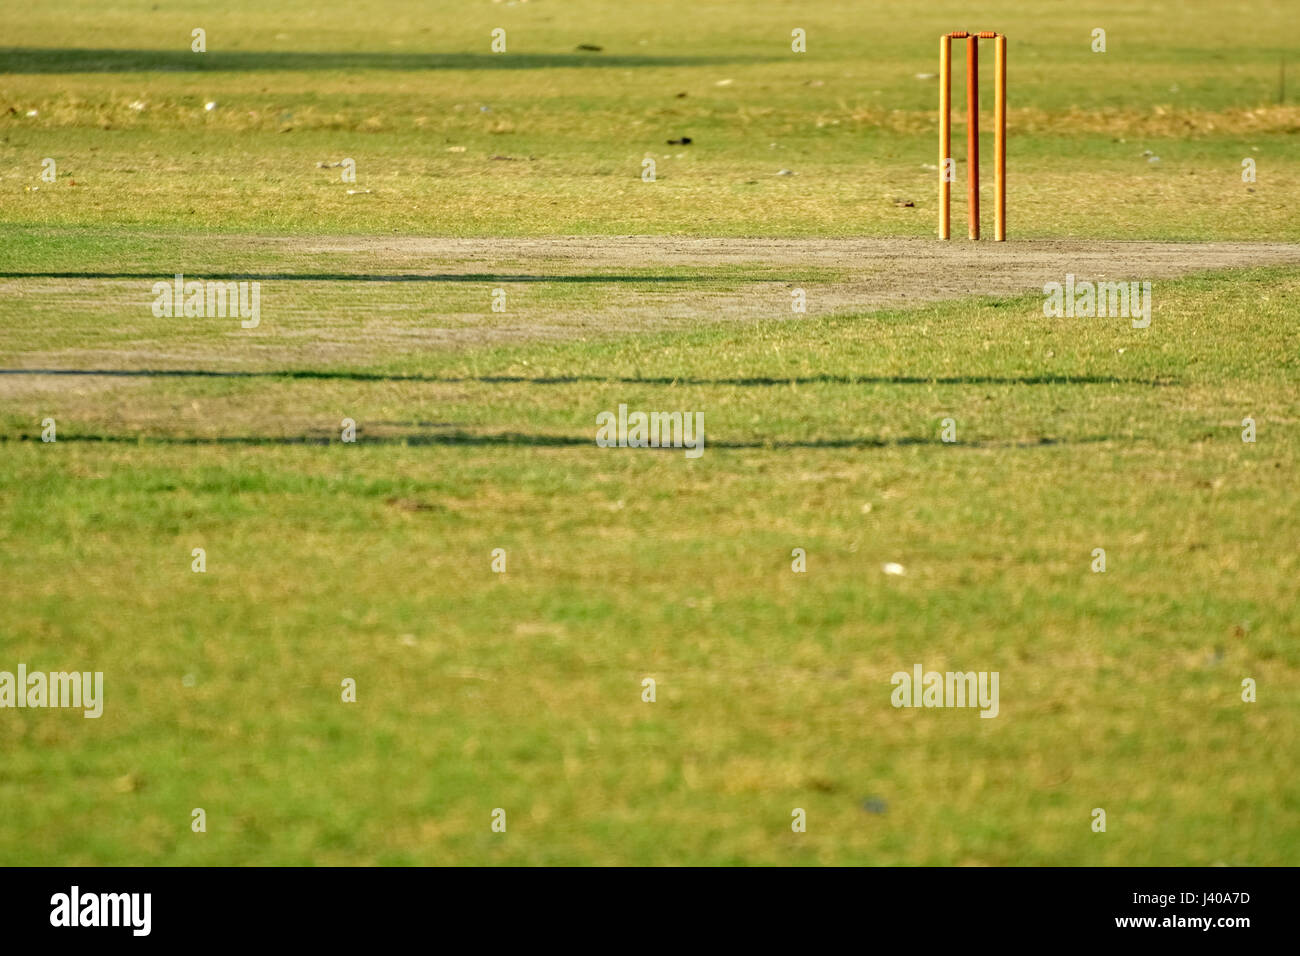 Svuotare il cricket pitch Foto Stock